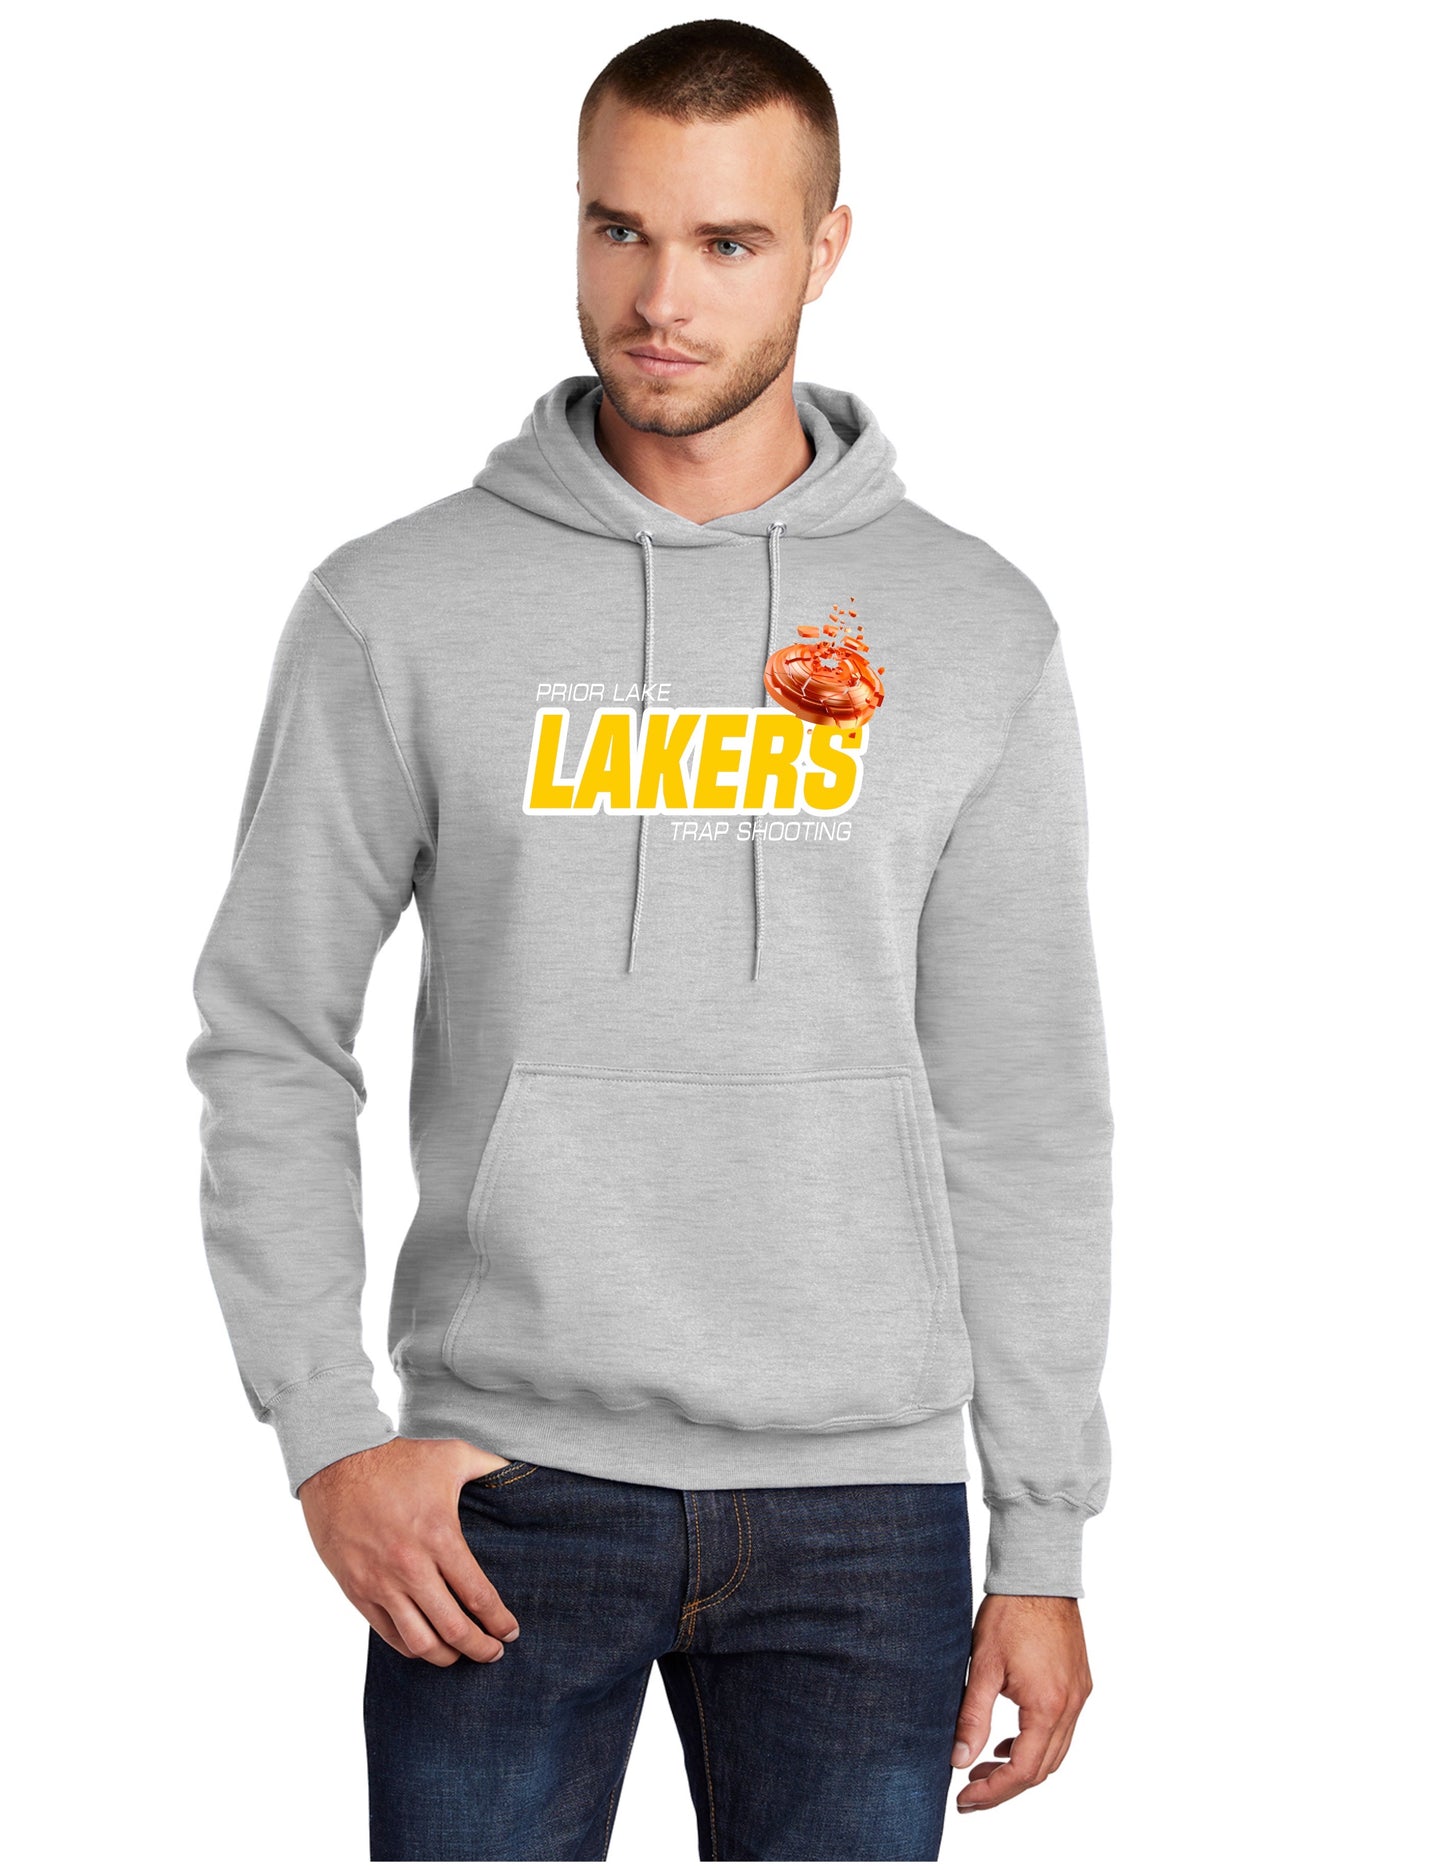 Lakers trap shooting hoodie